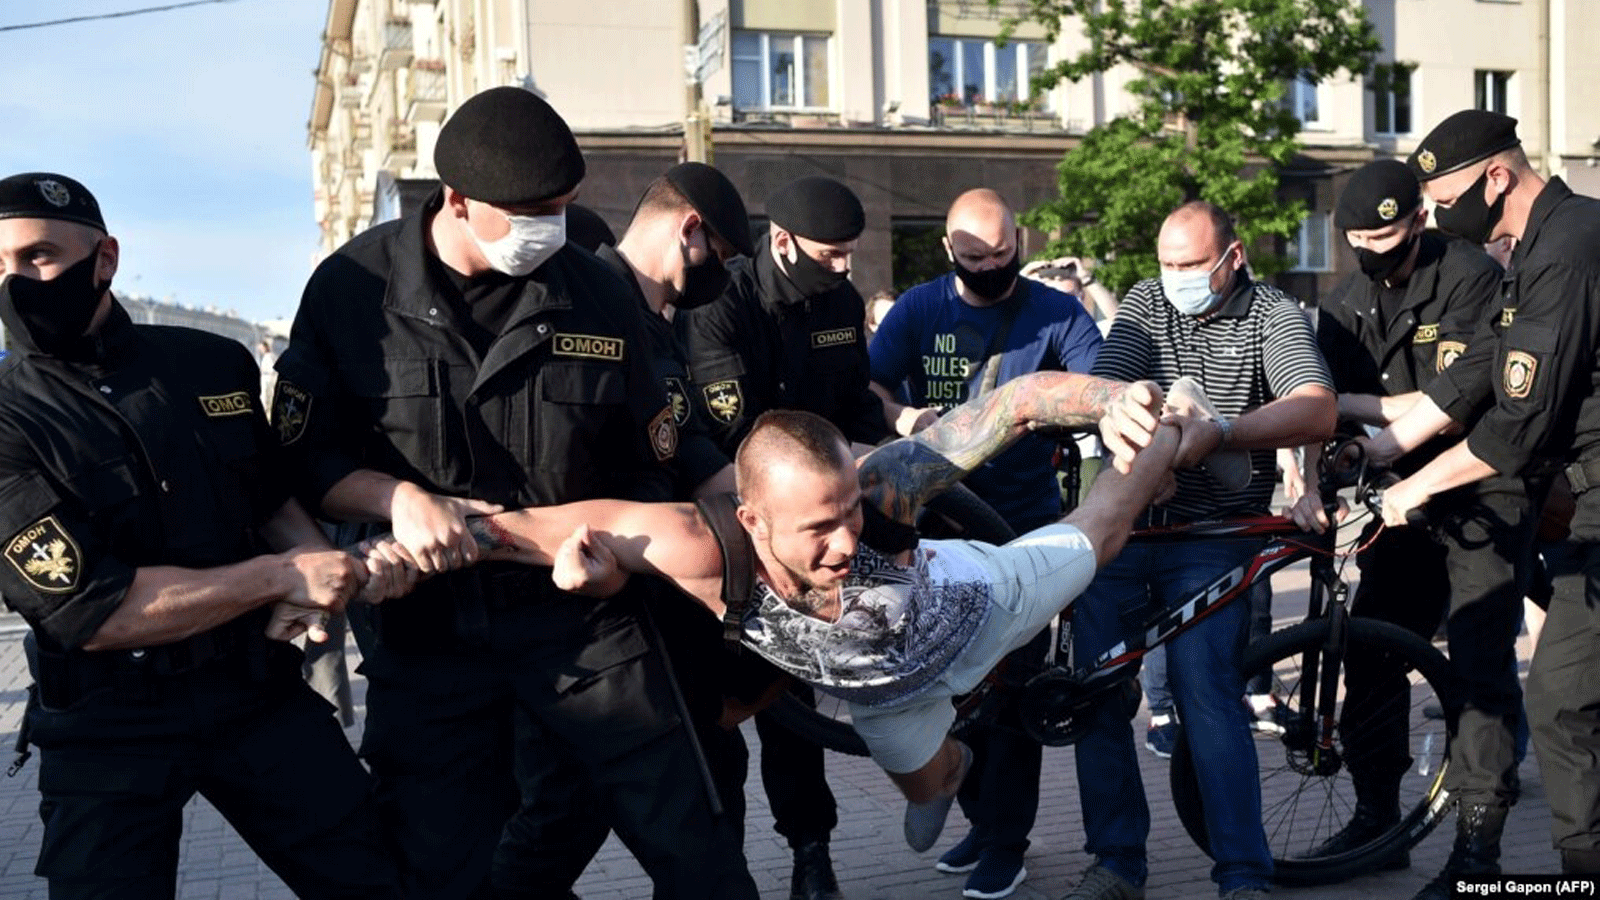 ضباط شرطة مكافحة الشغب في بيلاروسيا يعتقلون أحد مؤيدي المعارضة خلال تجمع لدعم المرشحين الذين يسعون لتحدي الرئيس أليكساندر لوكاشينكا.